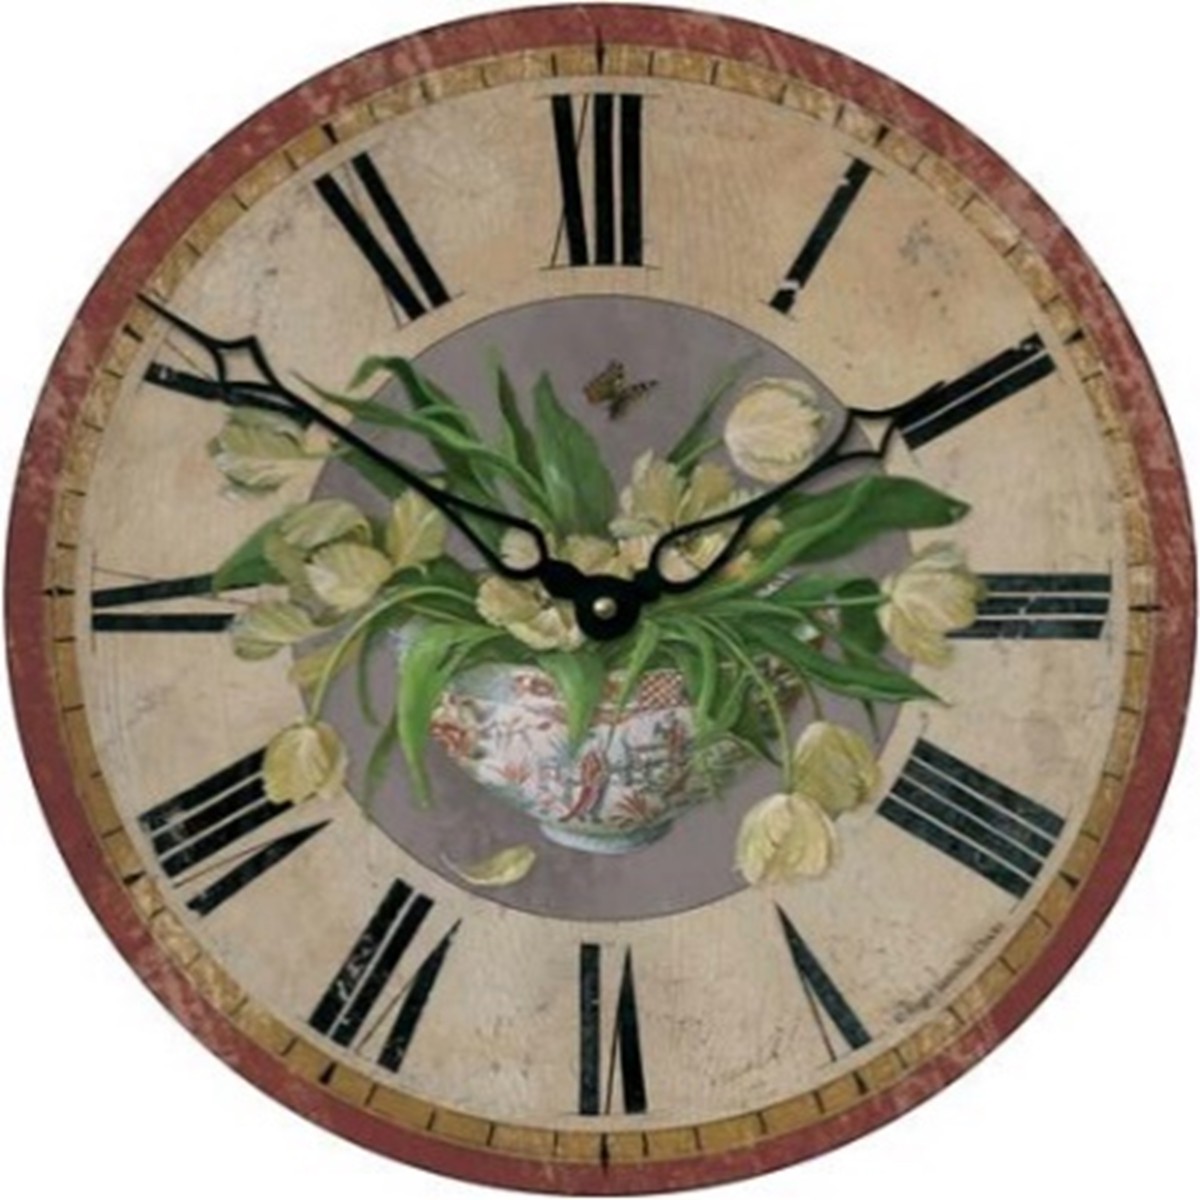   Horloge à motif Tulipe 36cm PUB/TULIPS  36cm